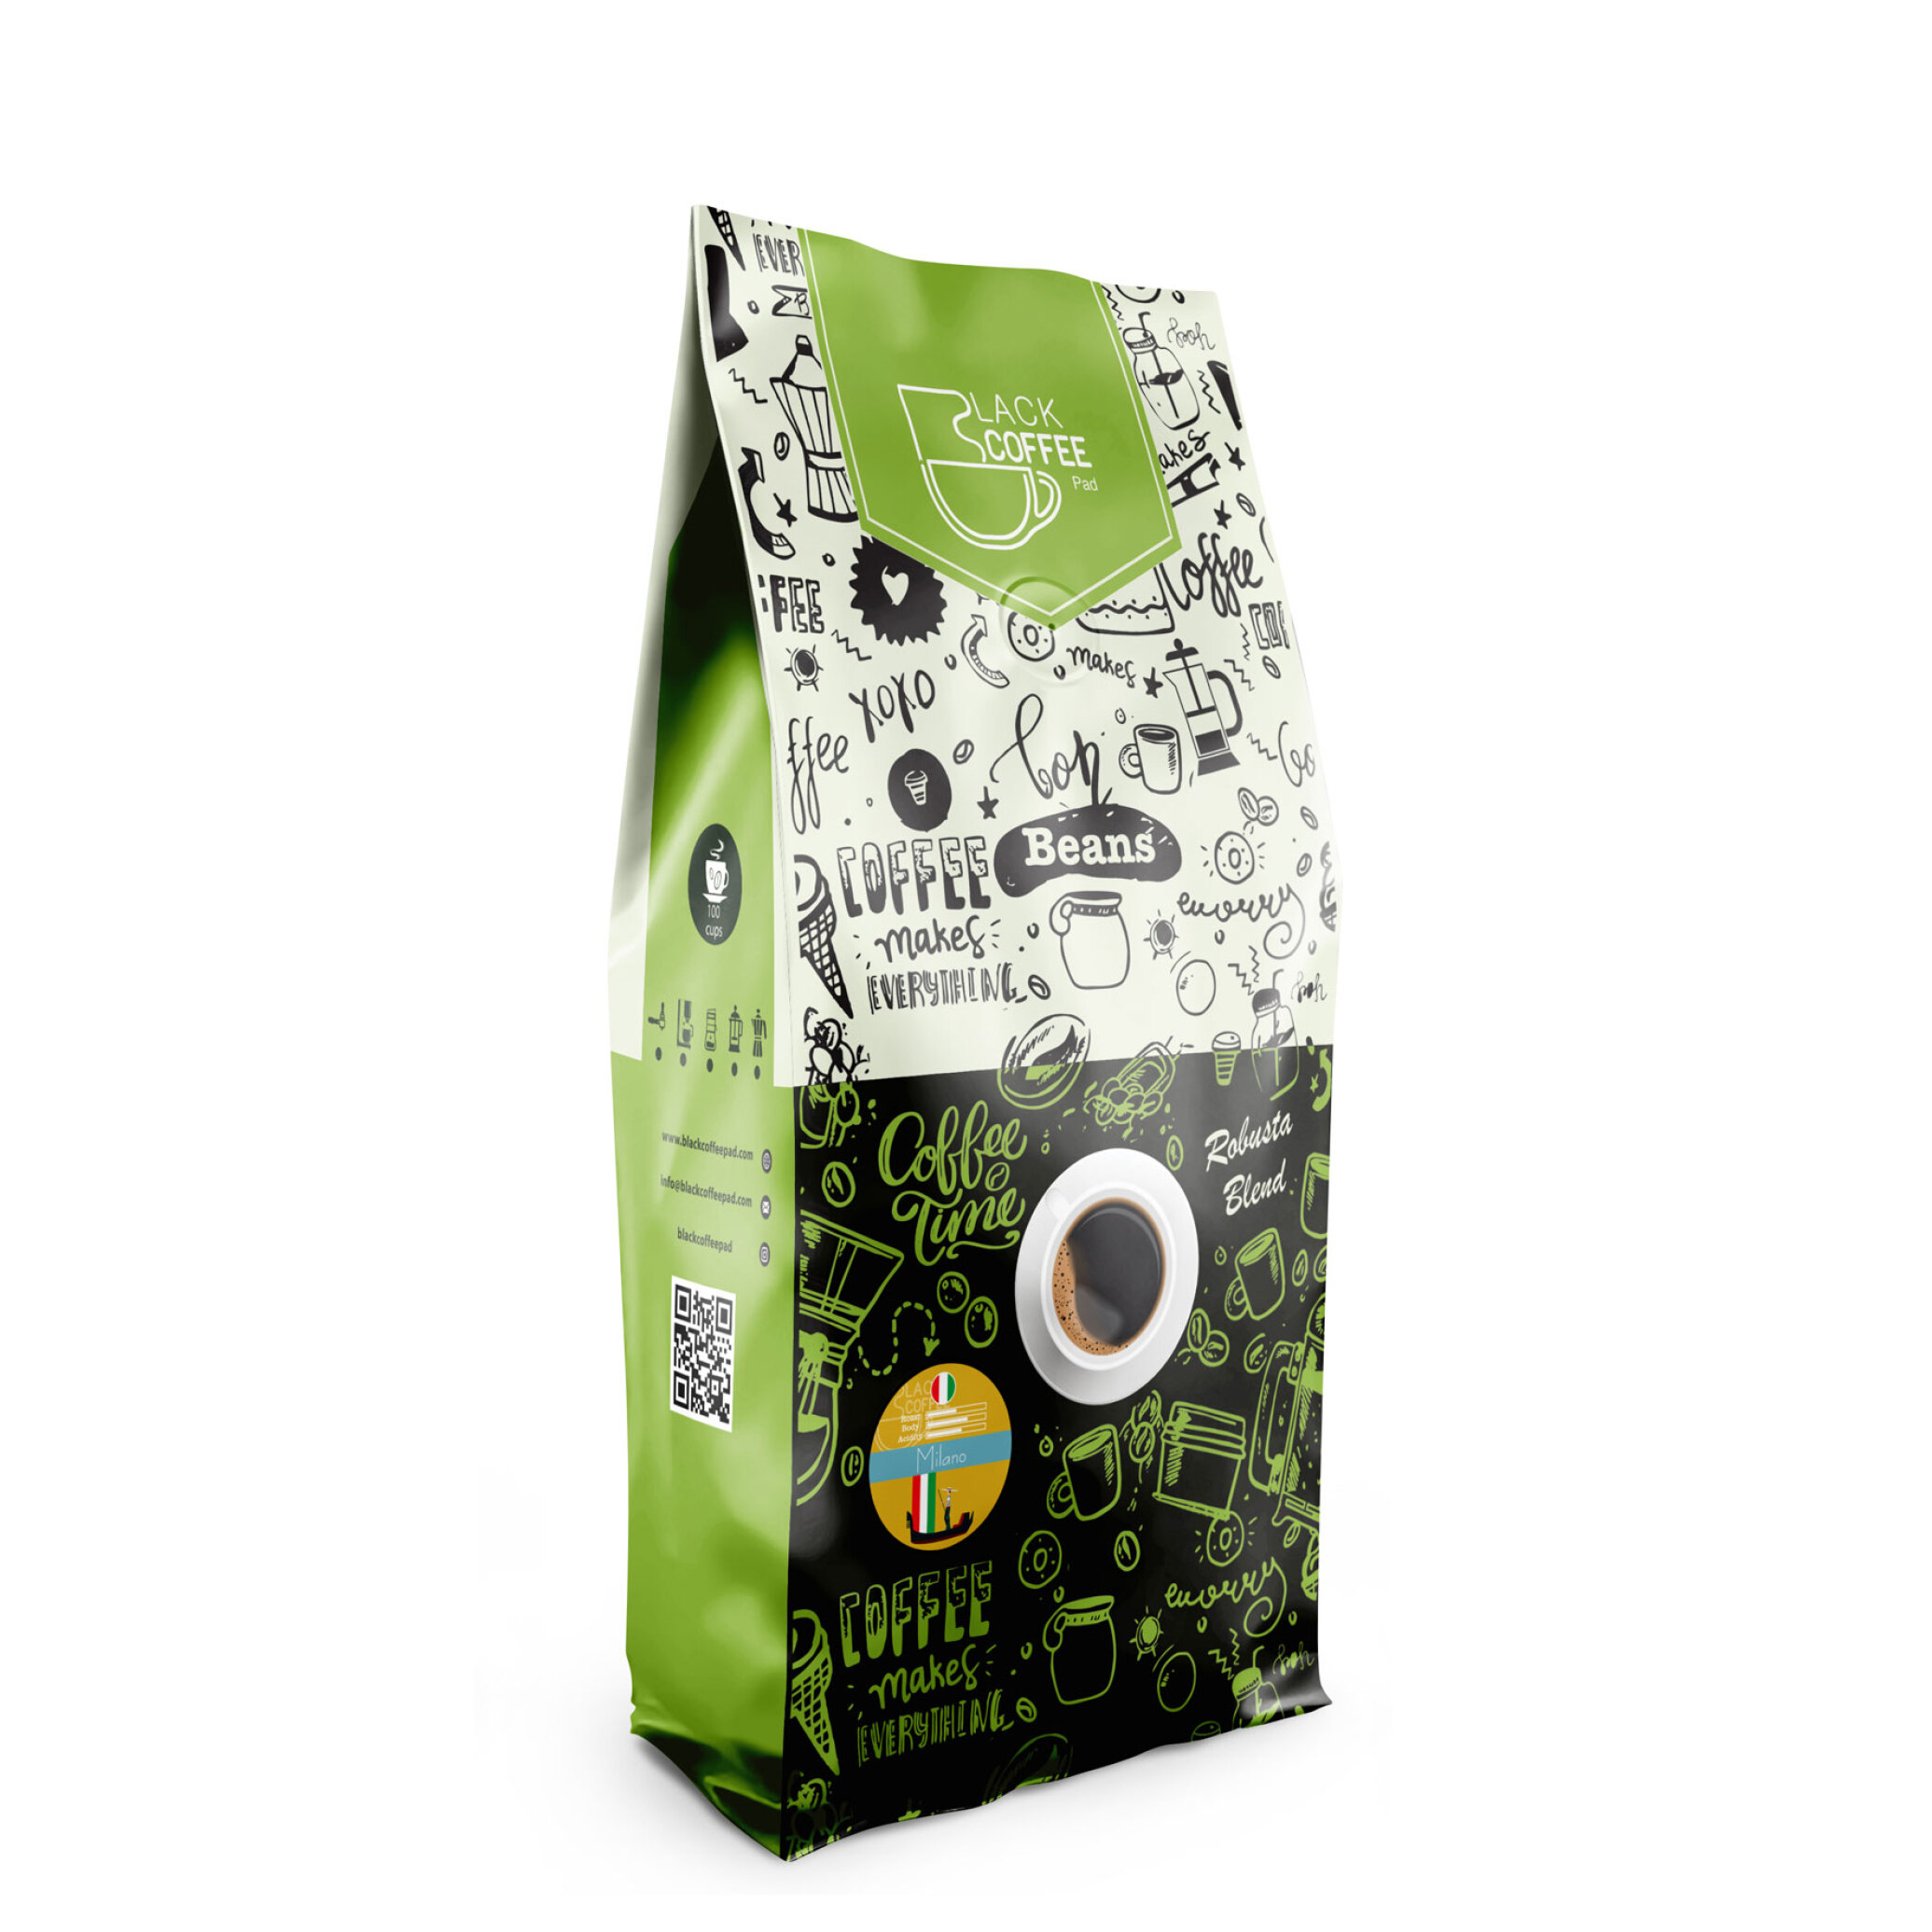  دانه قهوه میلانو | Milano Coffee Beans یک کیلو گرم | خرید دانه قهوه میلانو | قهوه میلانو 